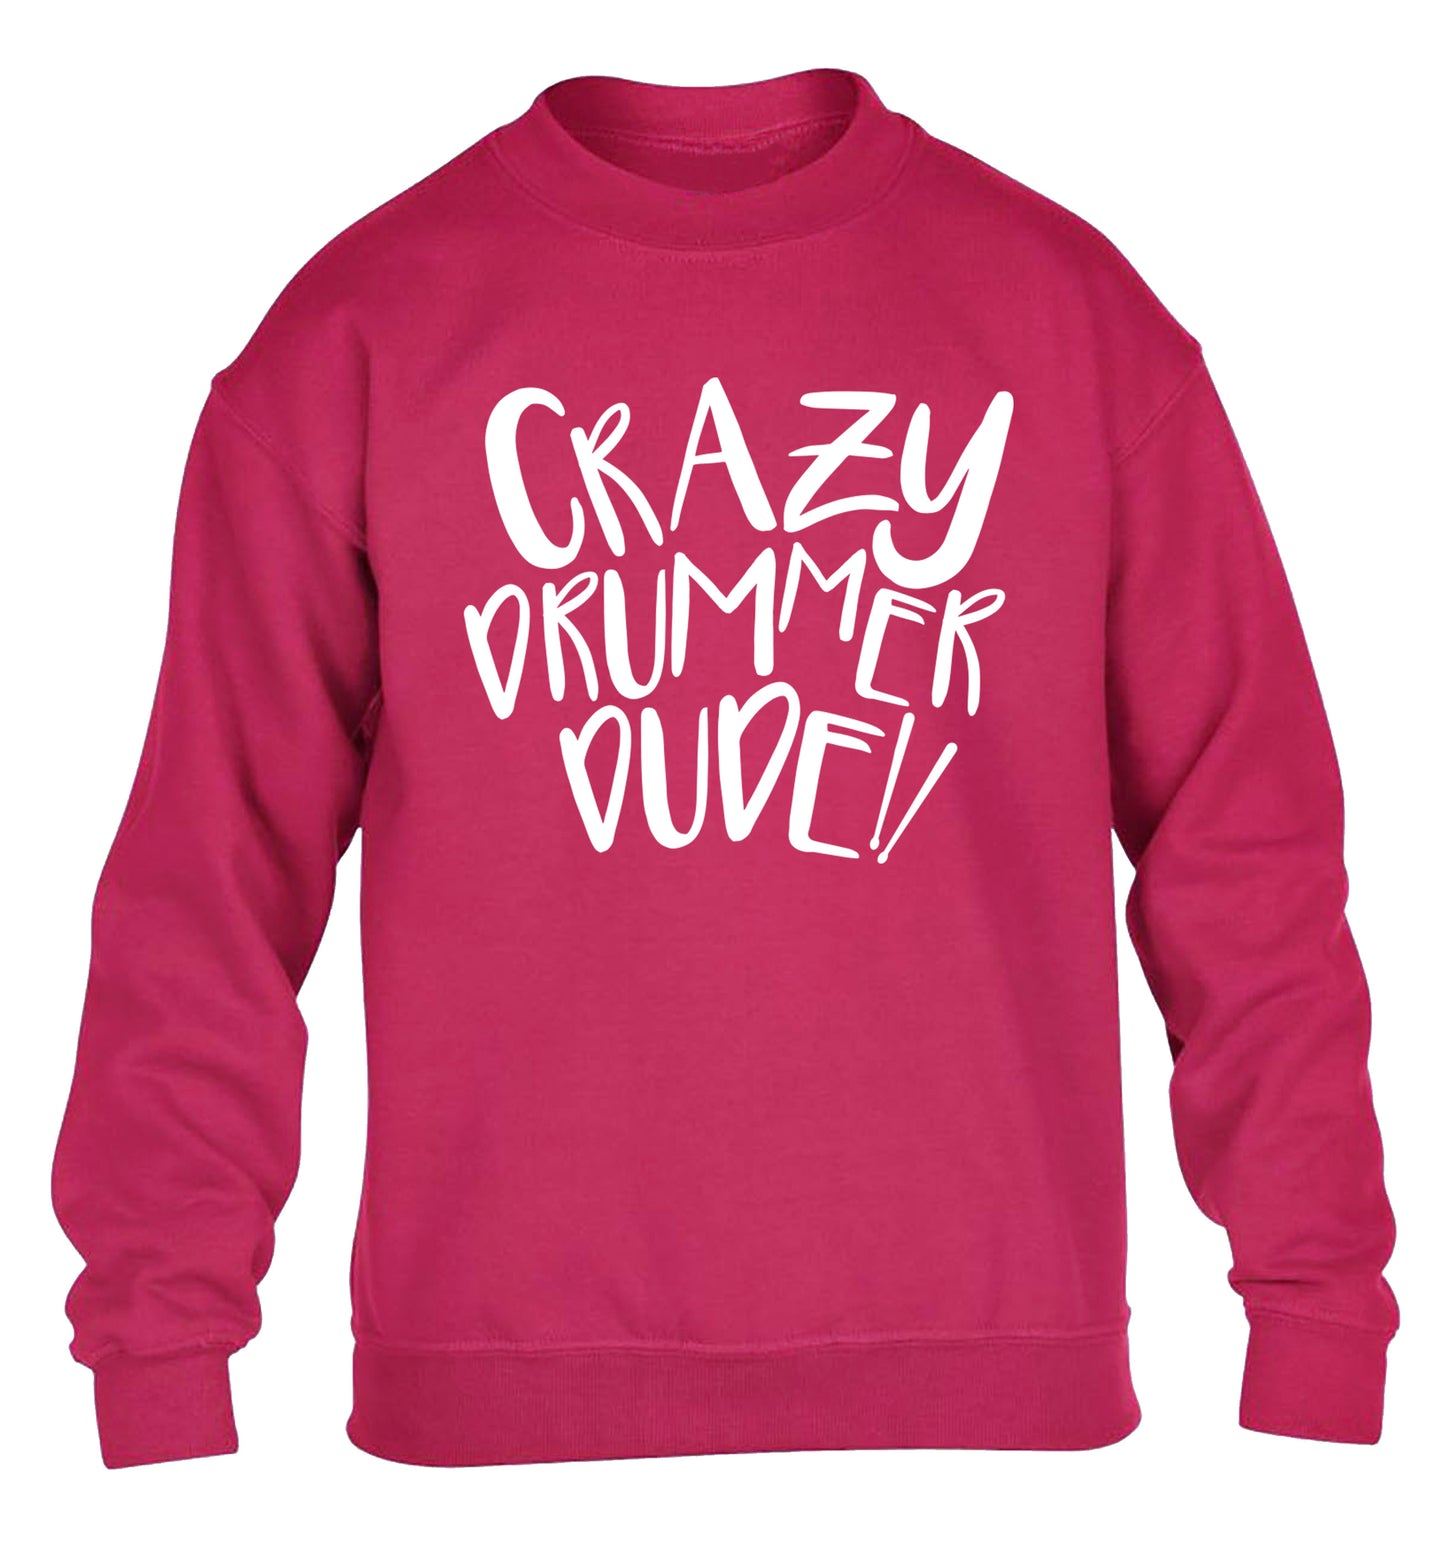 Crazy drummer dude children's pink sweater 12-14 Years